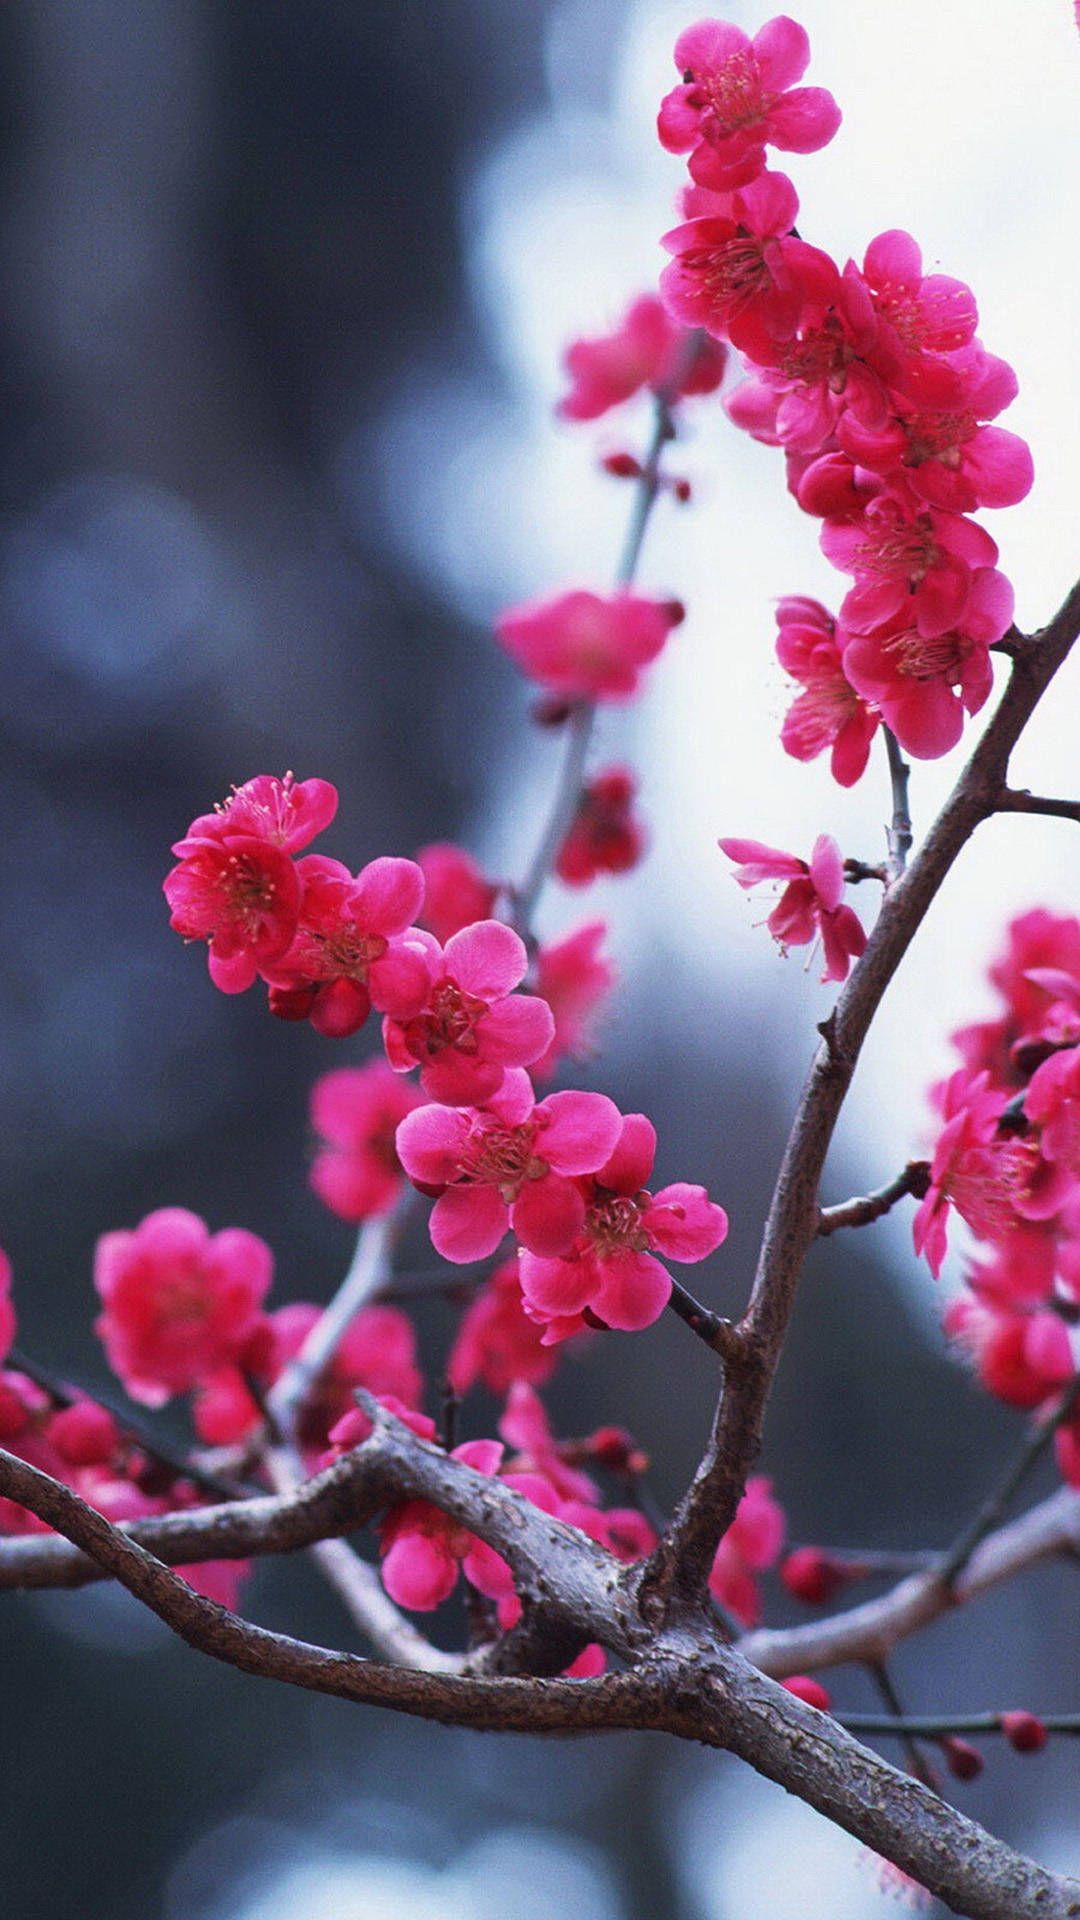 Cherry Blossom iPhone Wallpaper Widescreen. 花 壁紙, 桜の花, 桜 絵